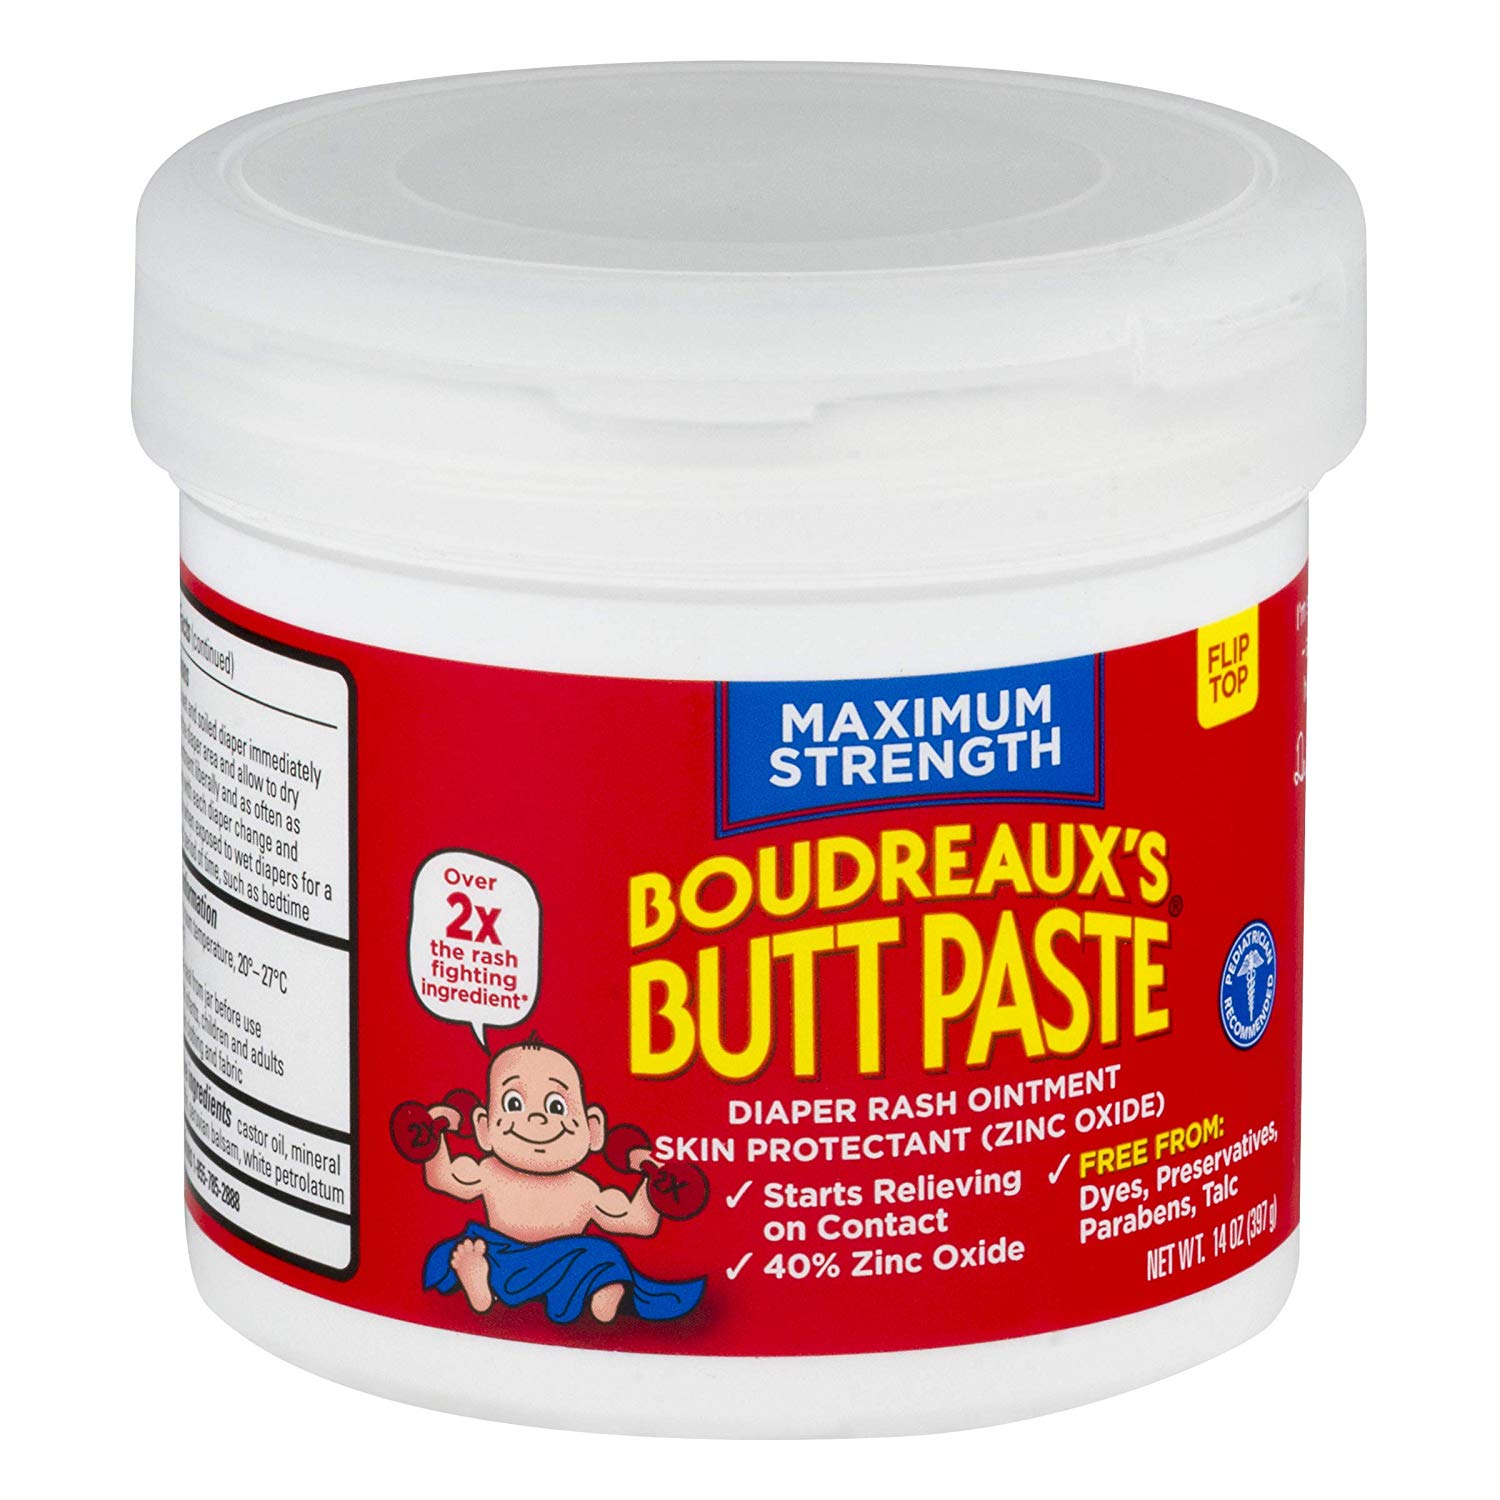 Boudreaux's Butt Paste 尿布膏， 14oz